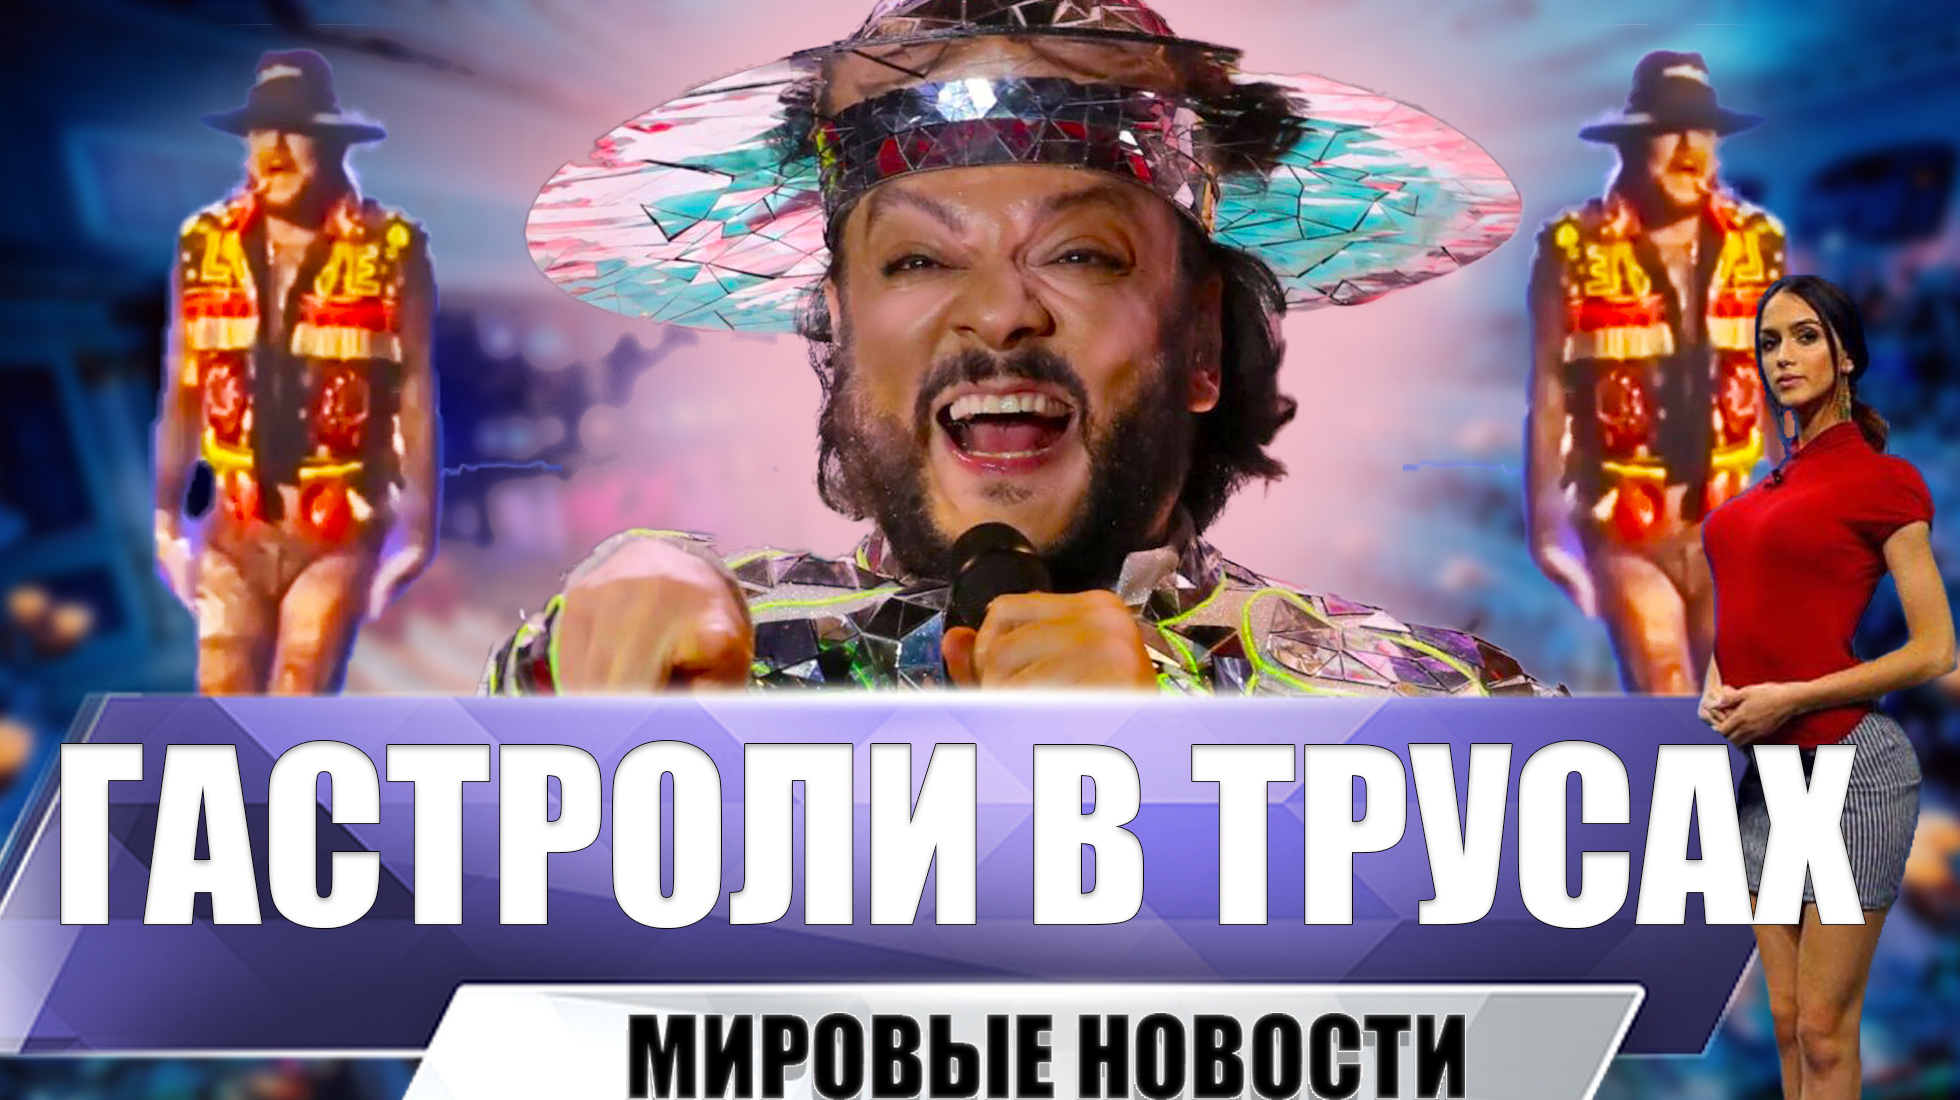 Киркоров в колготках и трусах вышел на сцену в Казахстане